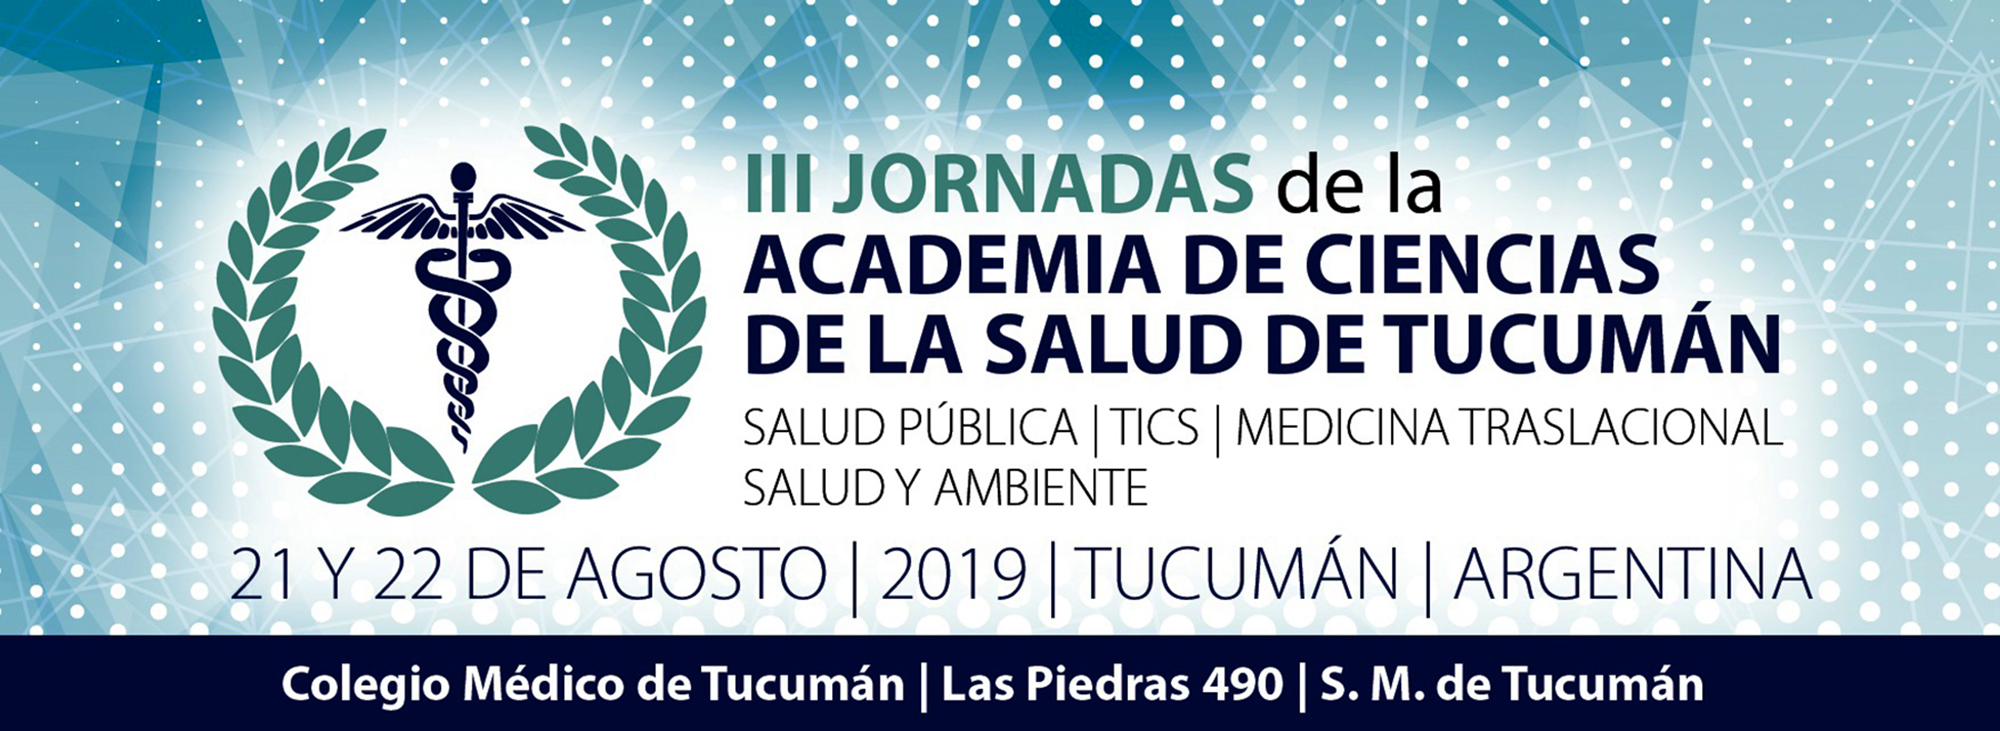 III Jornadas de la Academia de Ciencias de la Salud de Tucumán